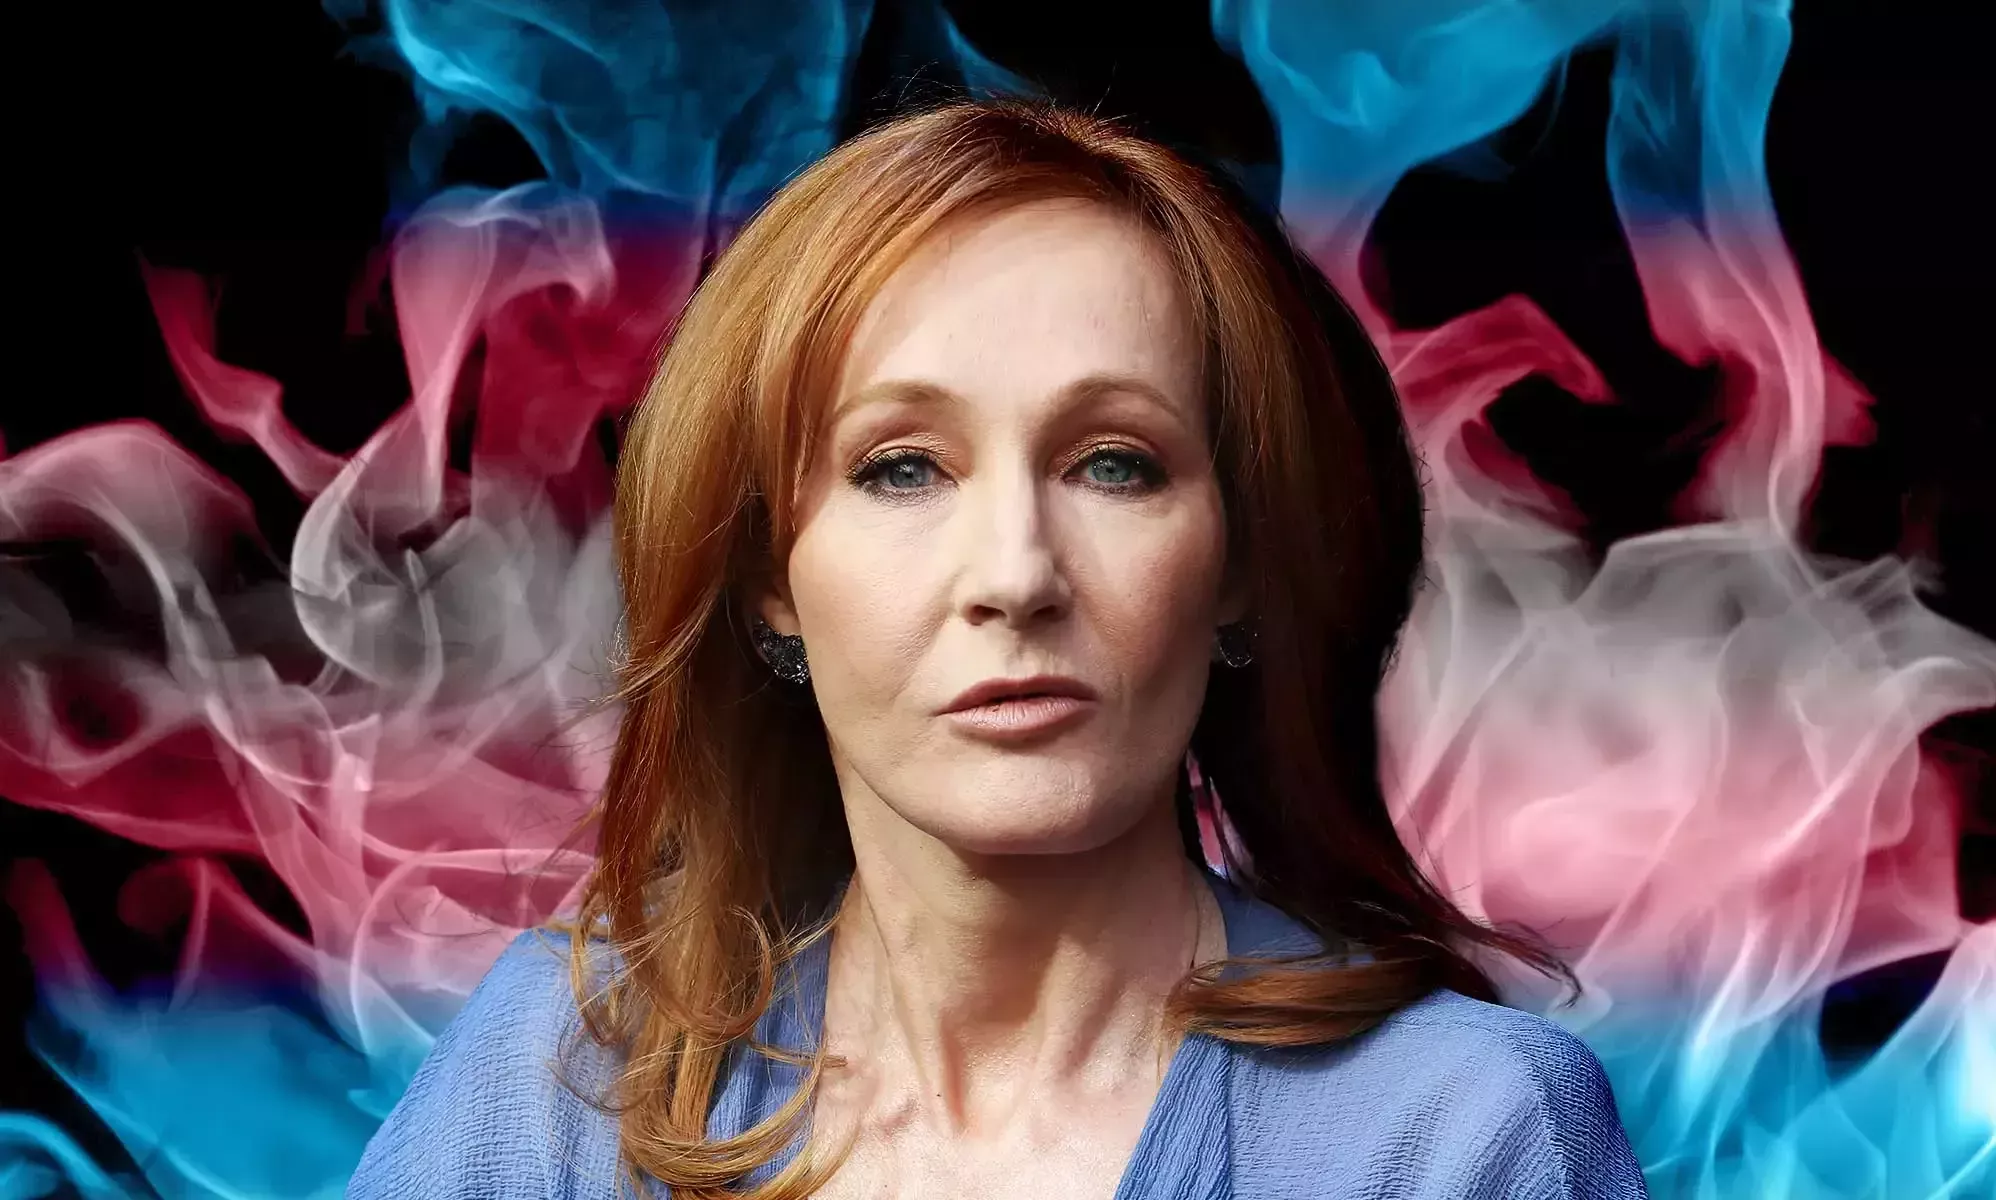 ¿Qué ha dicho JK Rowling sobre los transexuales? La continua saga de opiniones de la autora de Harry Potter